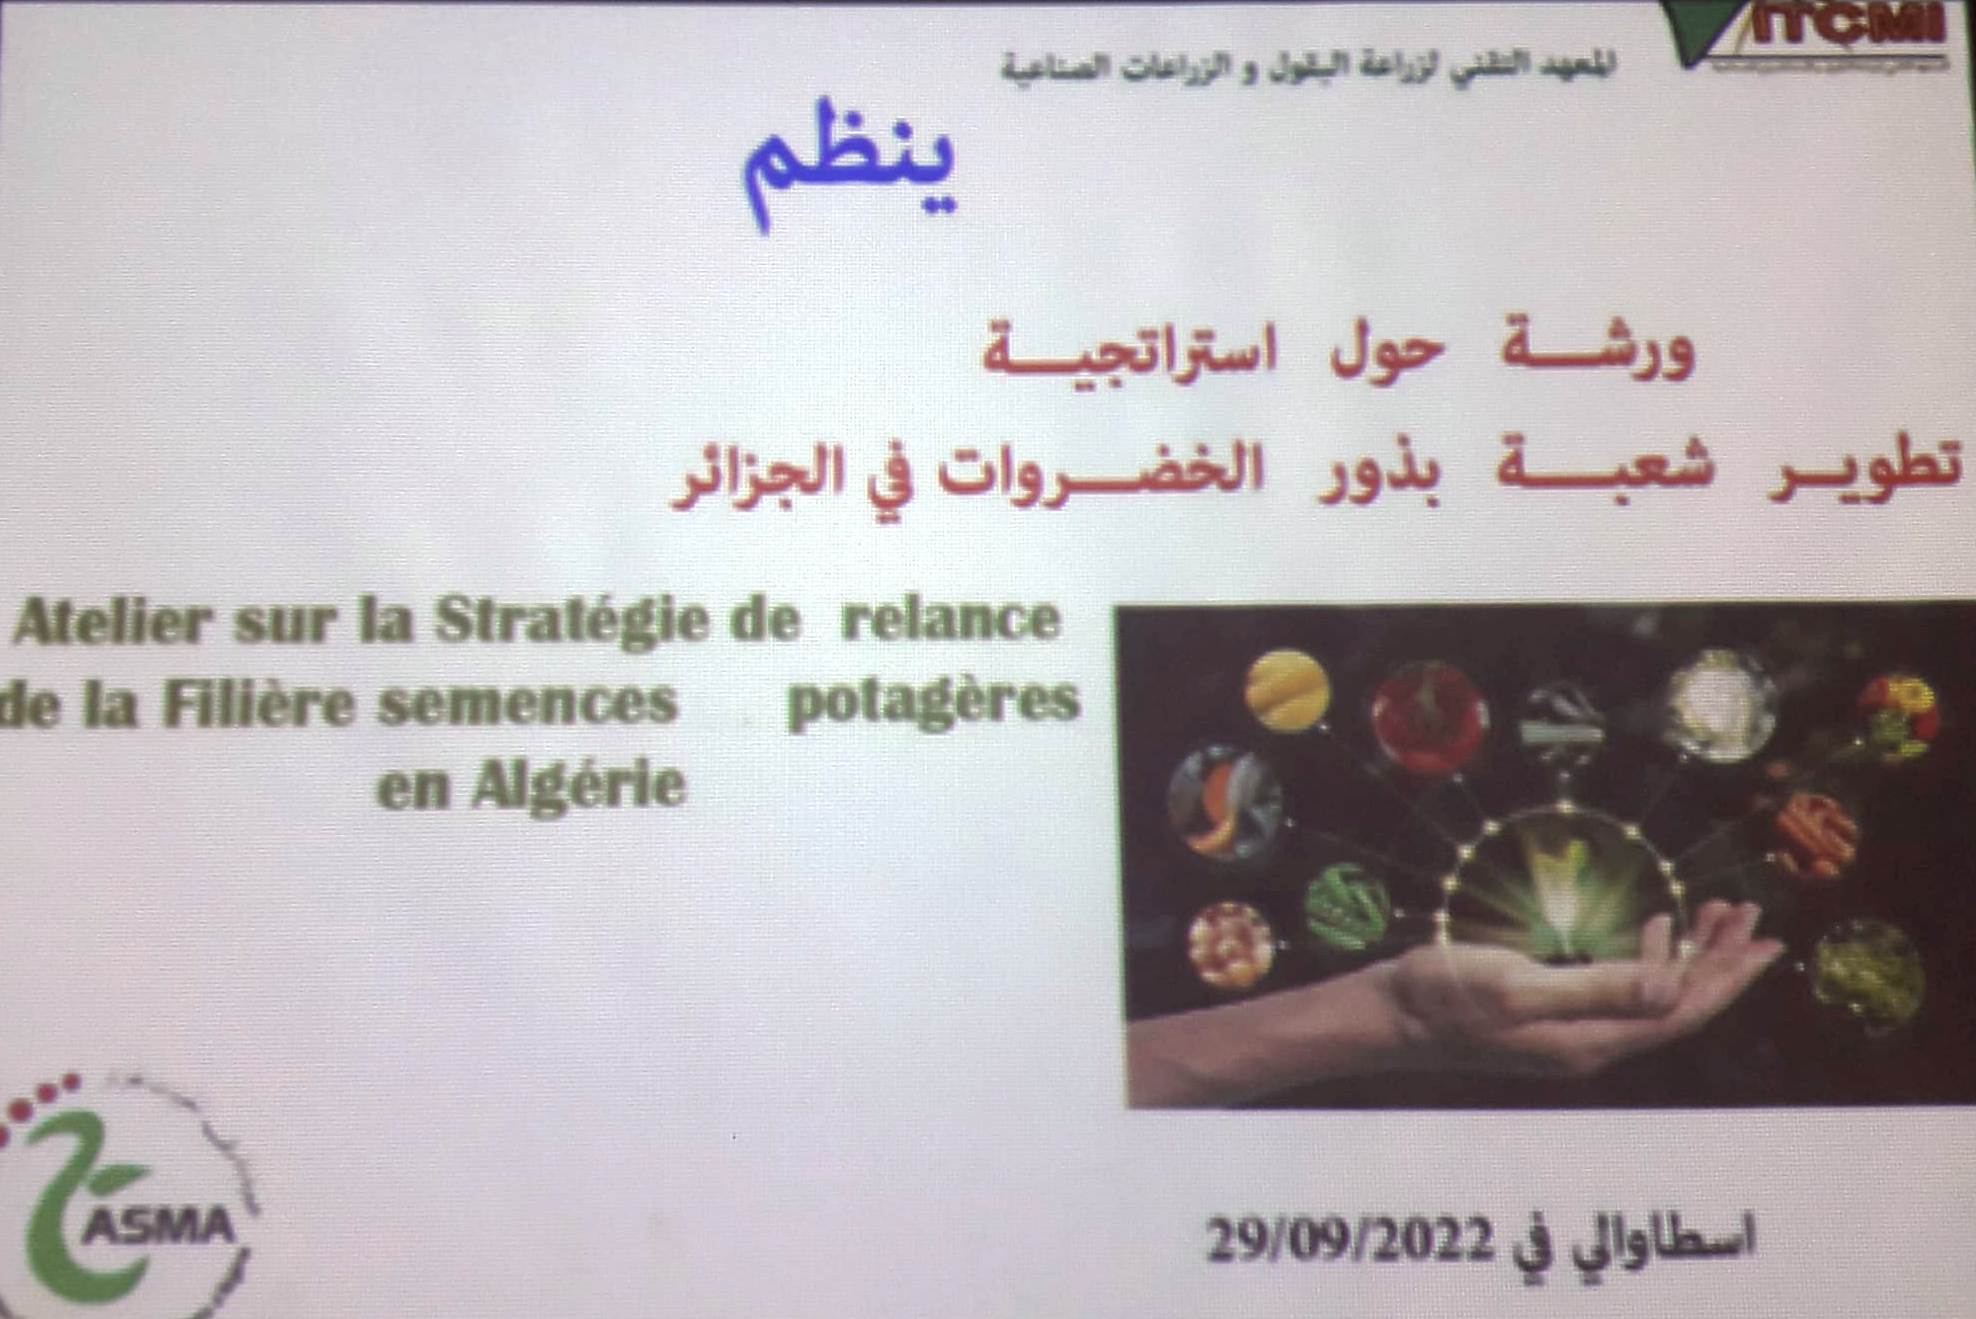 Atelier sur la stratégie des semences potagères locales en Algérie